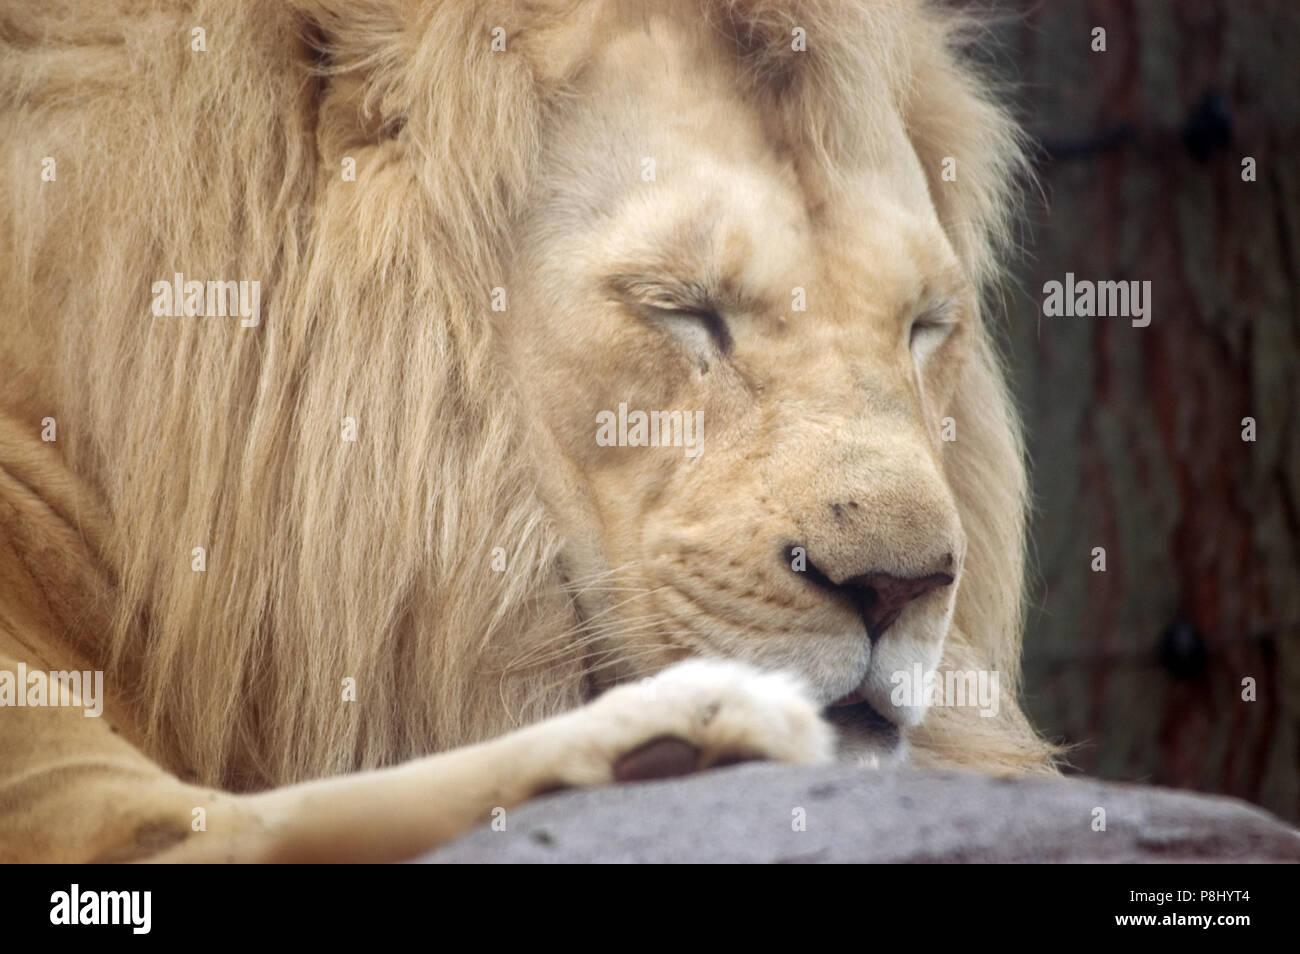 El rey de las bestias, el Poderoso León, toma una siesta. Foto de stock